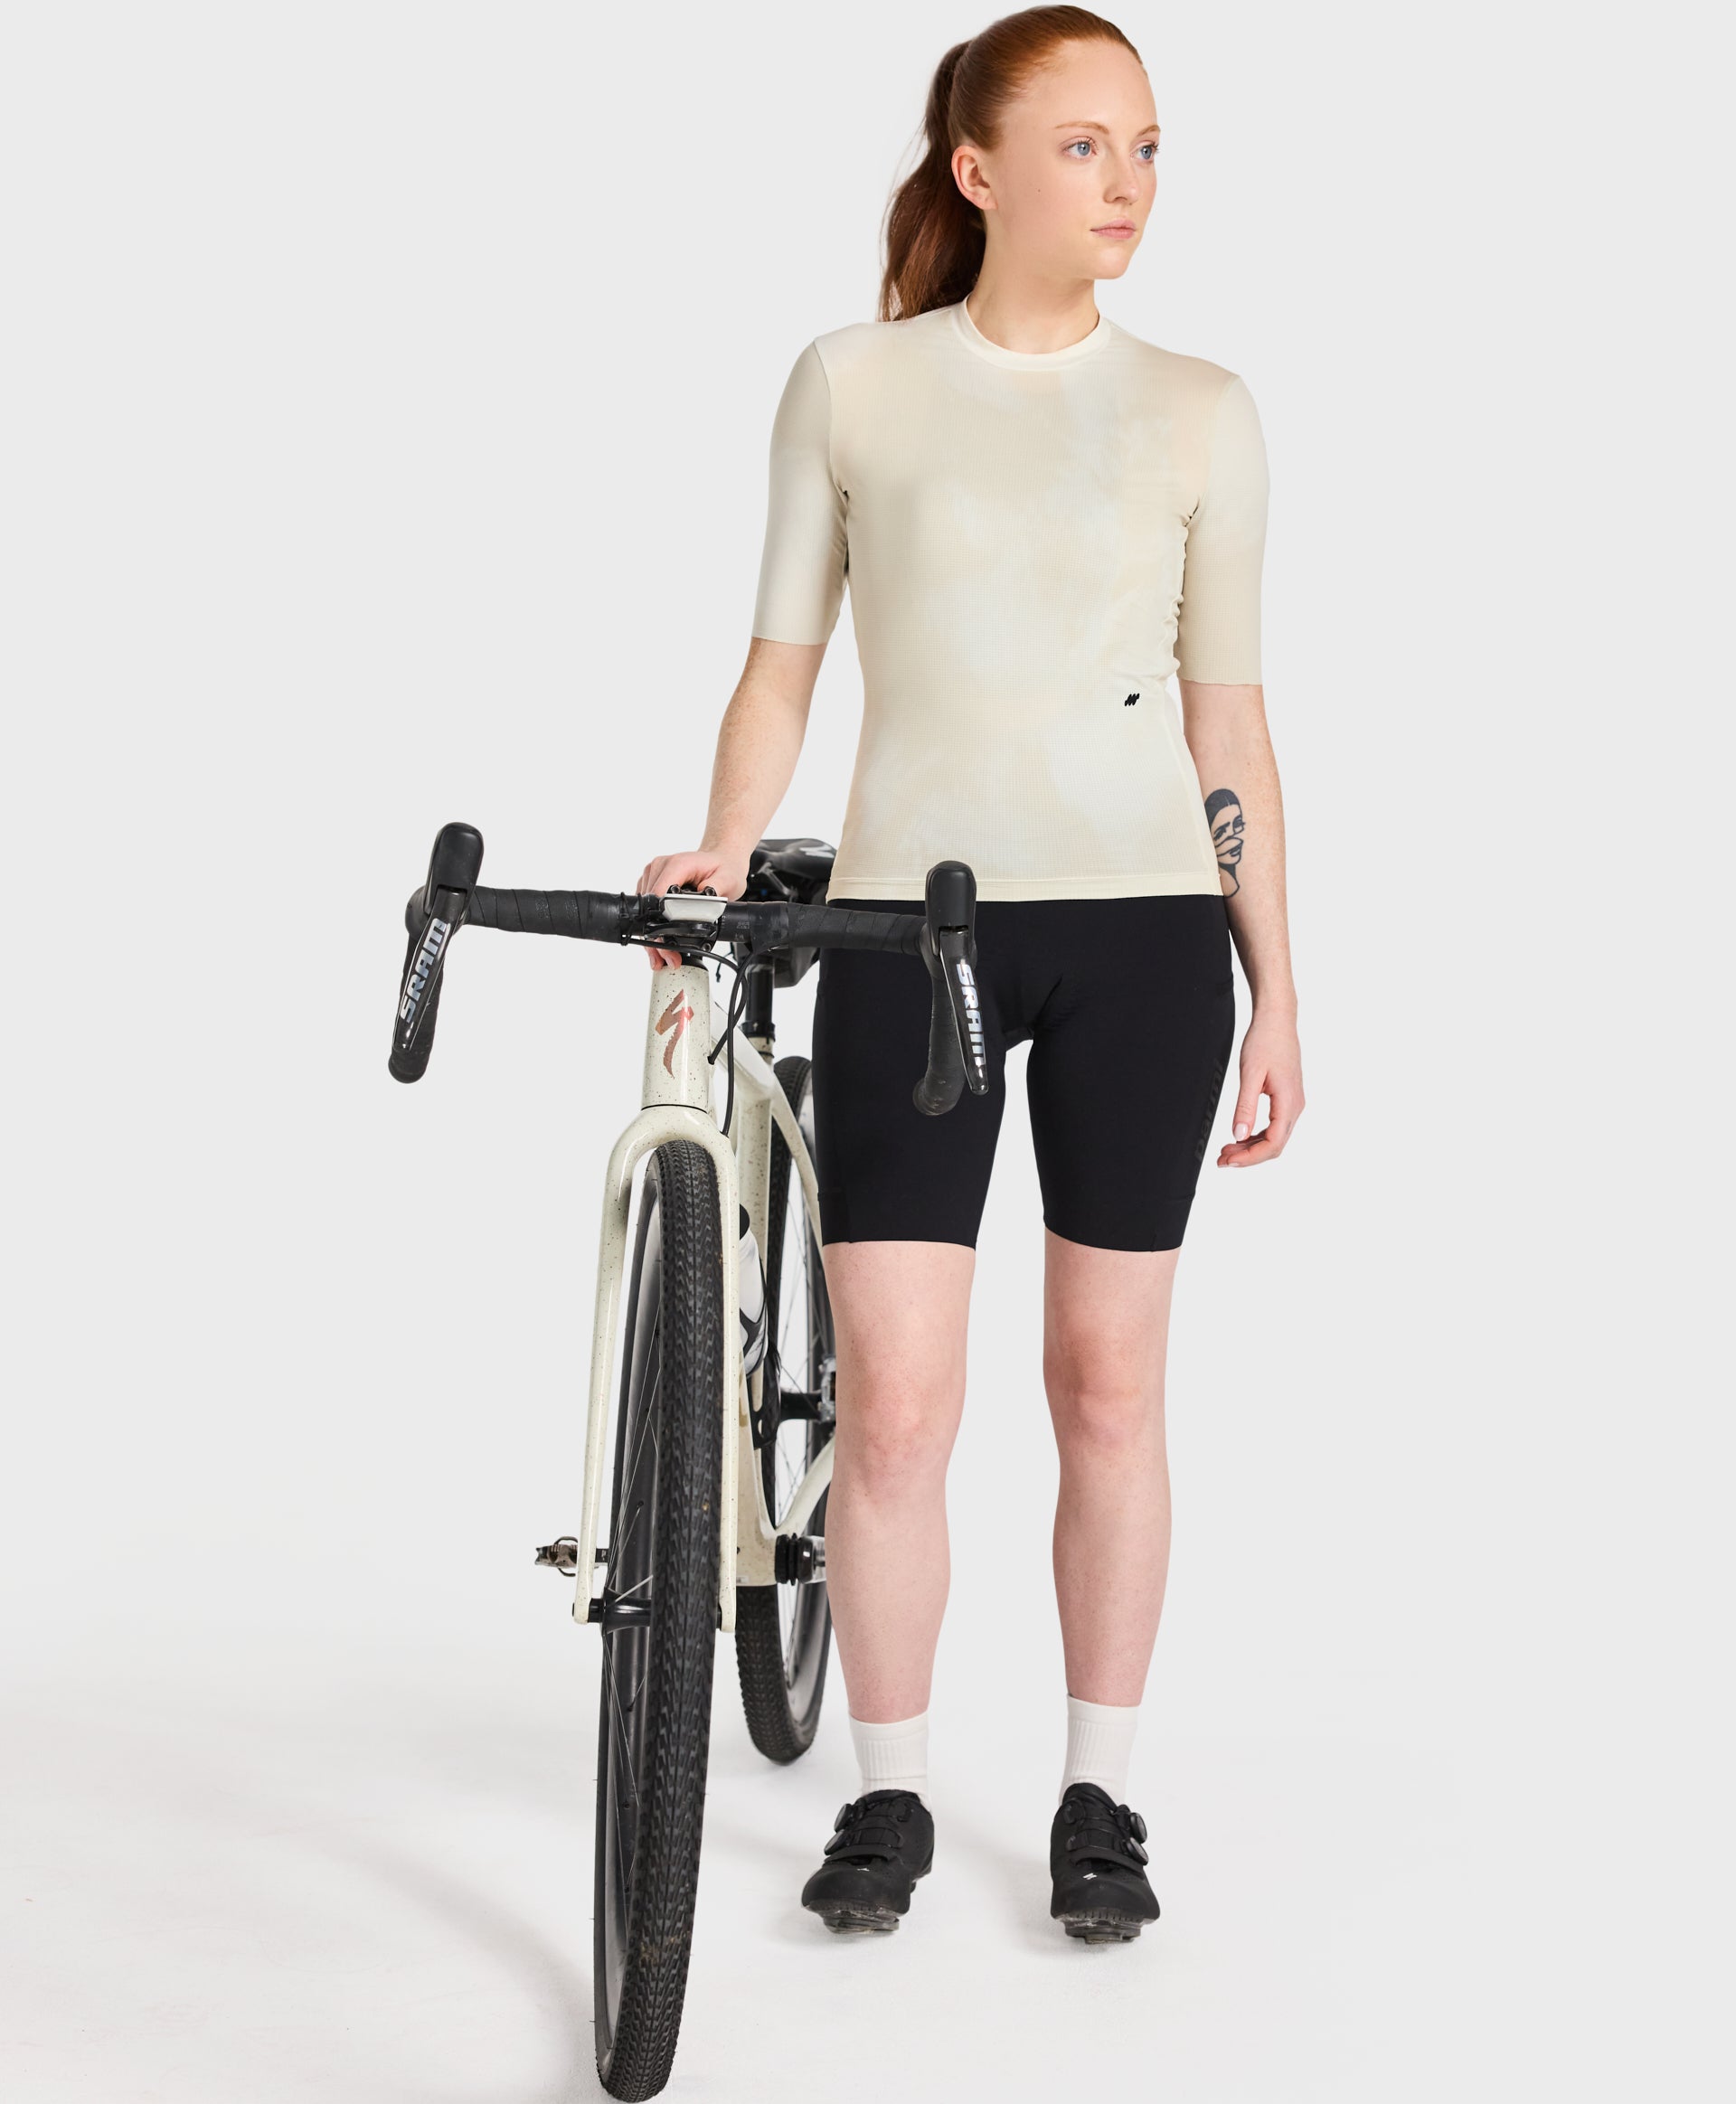 Women's Cycling Zipperless Jersey